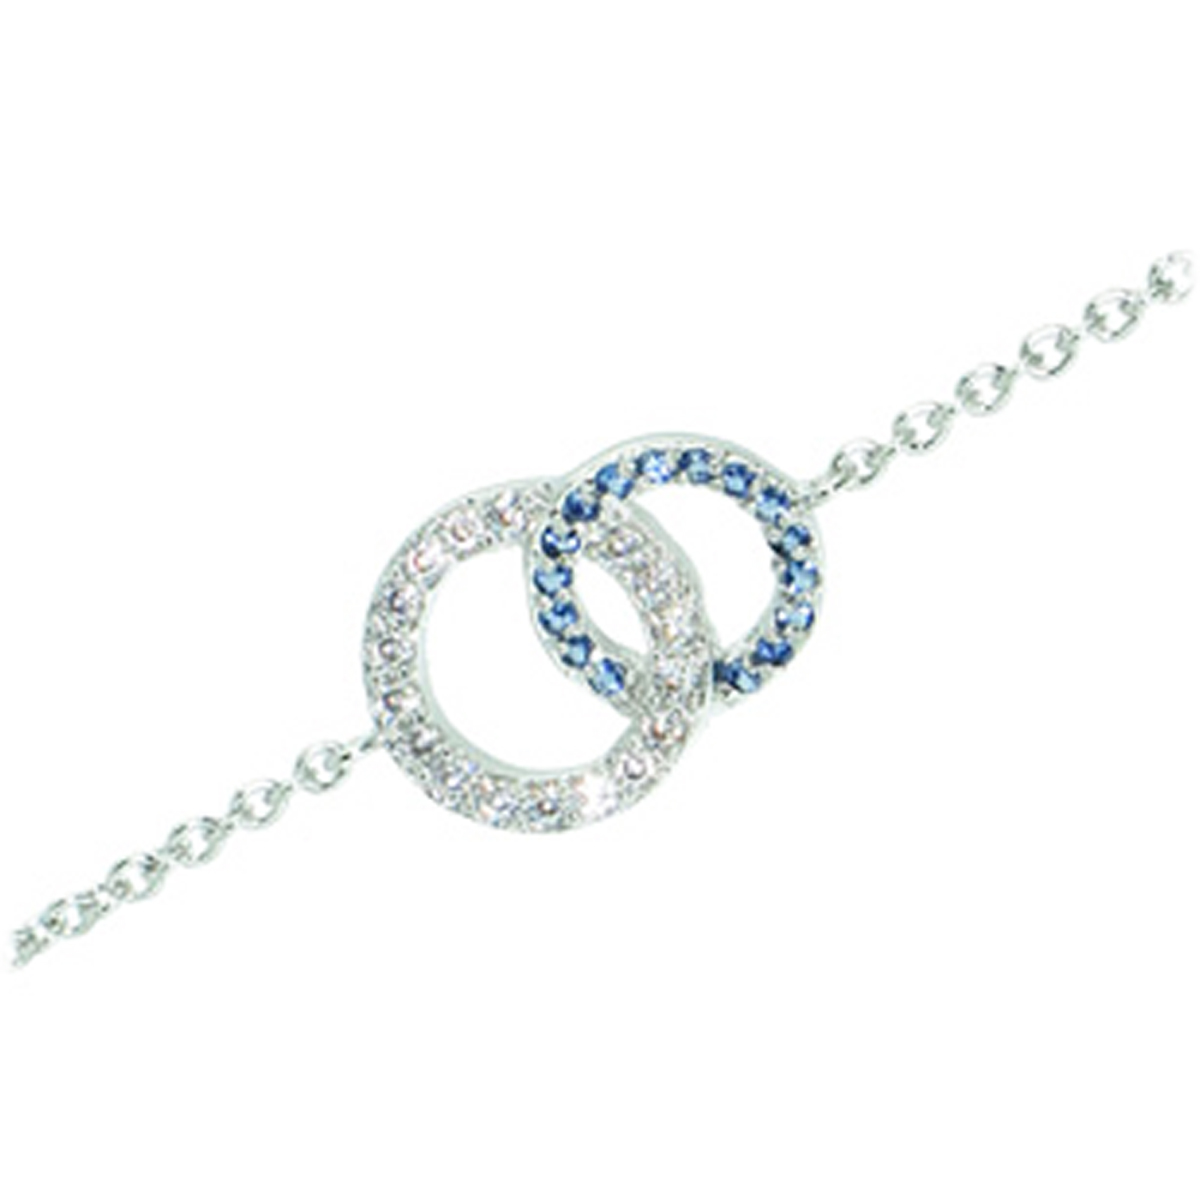 Bracelet Argent \'Sissi\' bleu blanc argenté rhodié (cercles) - 15x10 mm - [Q1079]